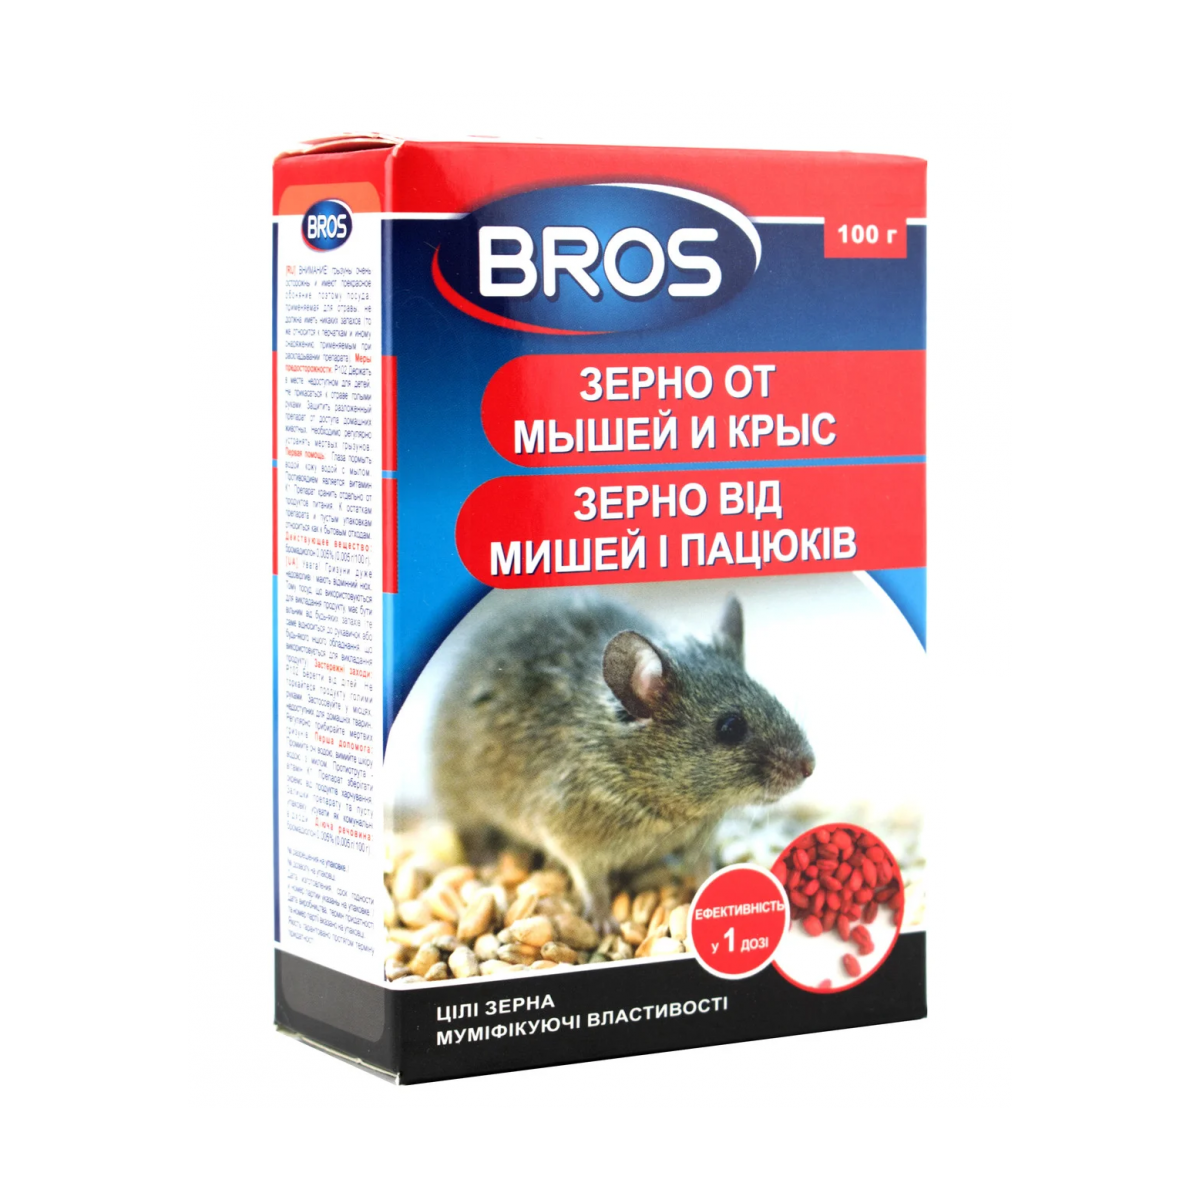 Зерно от мышей и крыс Bros 100 г / Брос